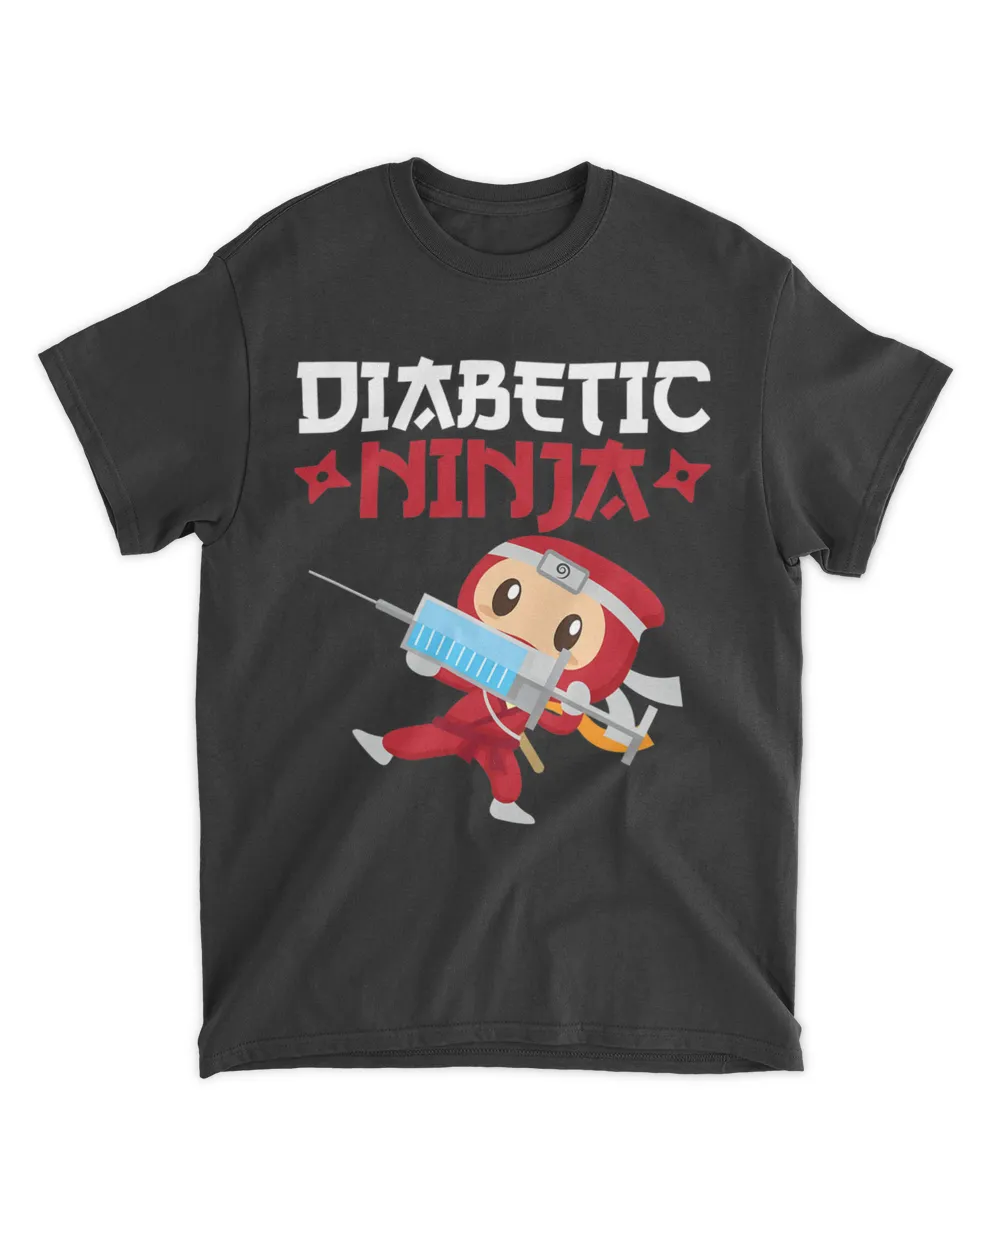 Diabetic Ninja Type 1 Diabetes